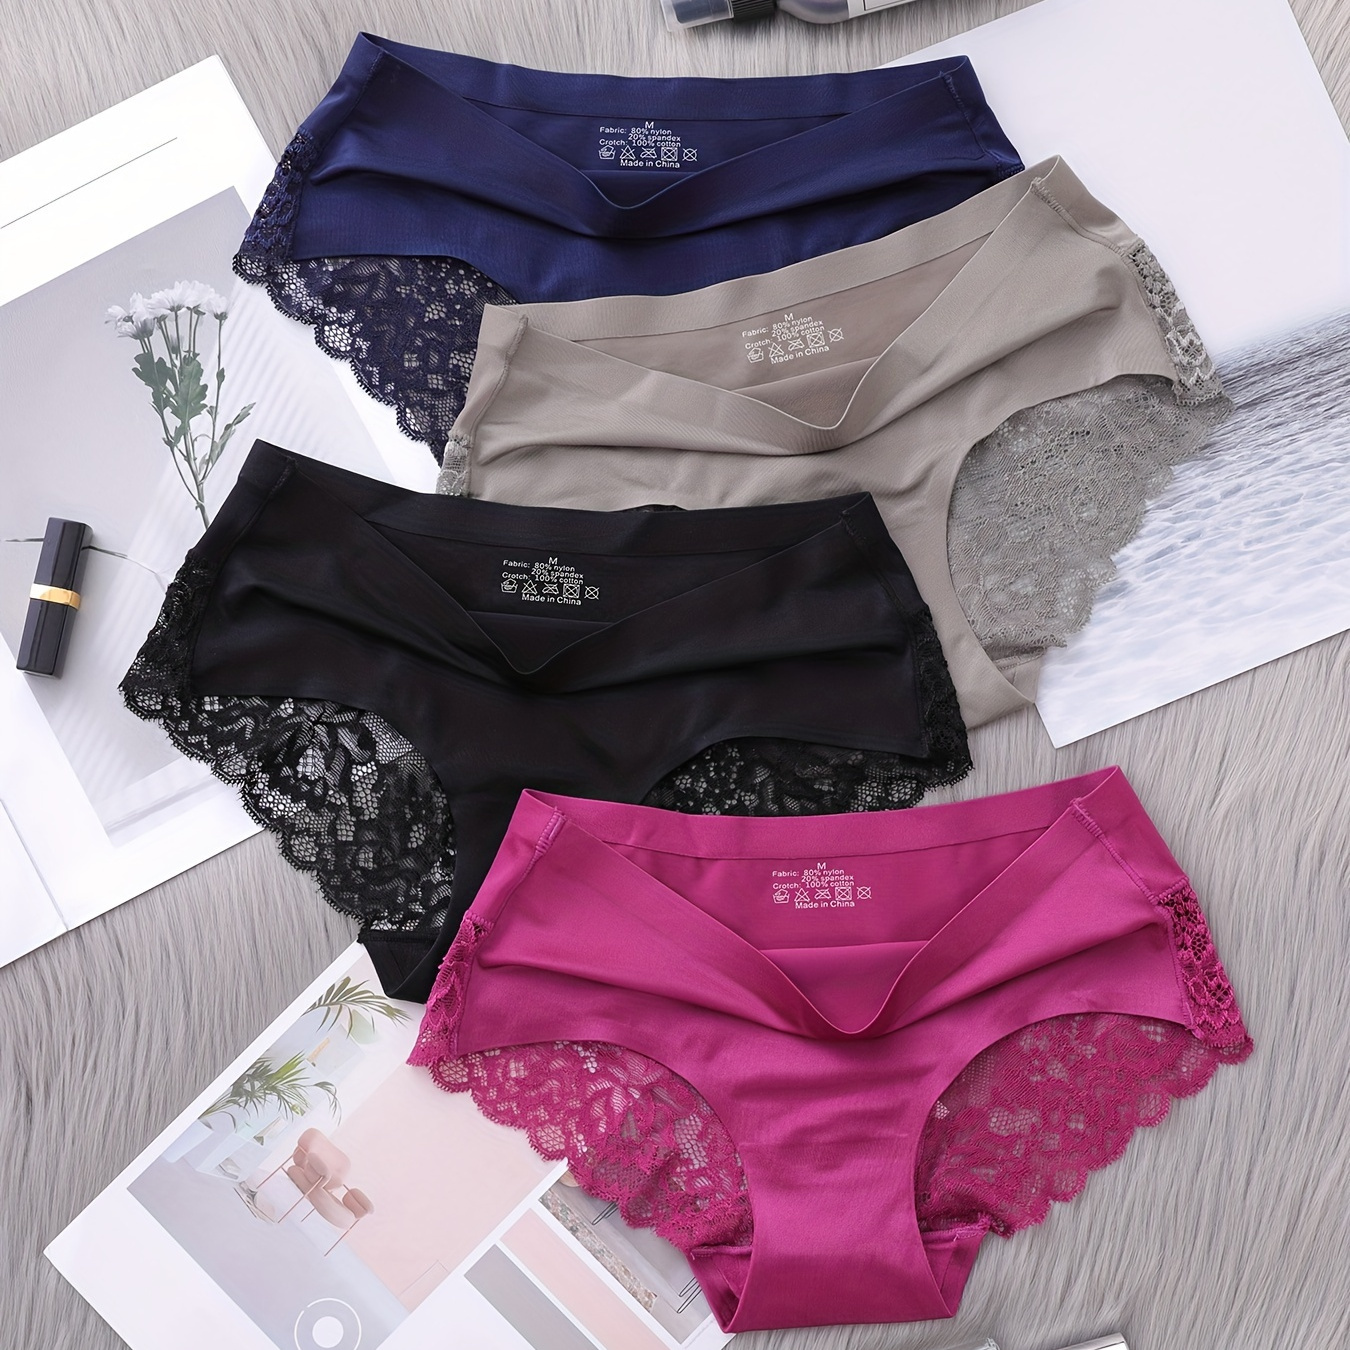 

4pcs Contrast Lace Briefs, Comfy & Breathable Scallop Trim Panties, Women's Lingerie & Underwear